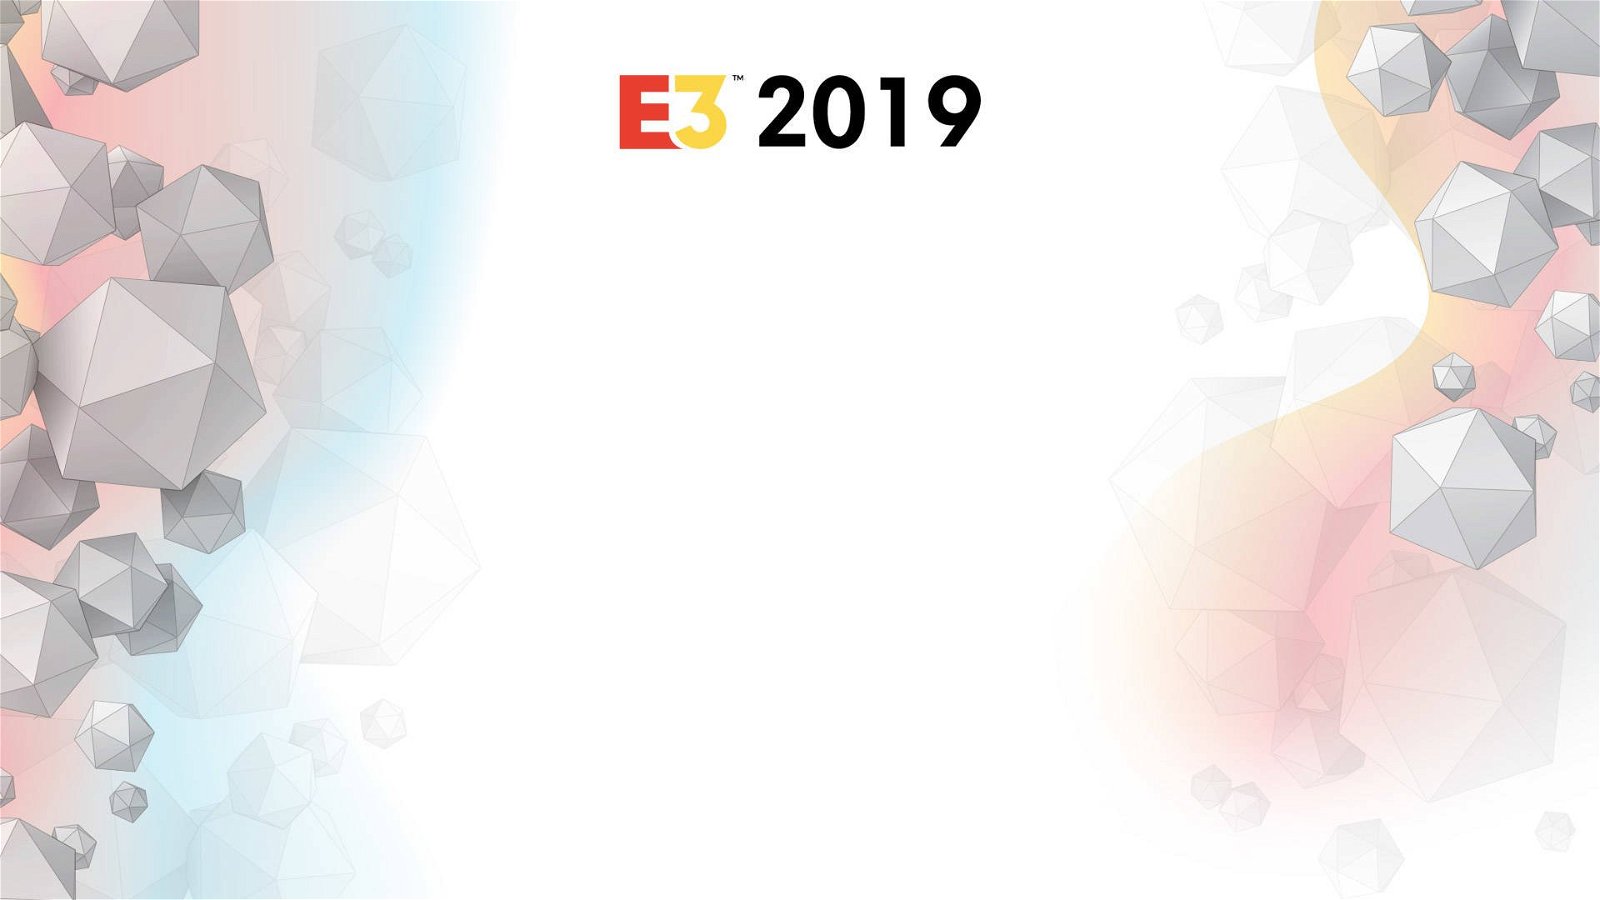 Immagine di E3 2019 | 09-13 giugno